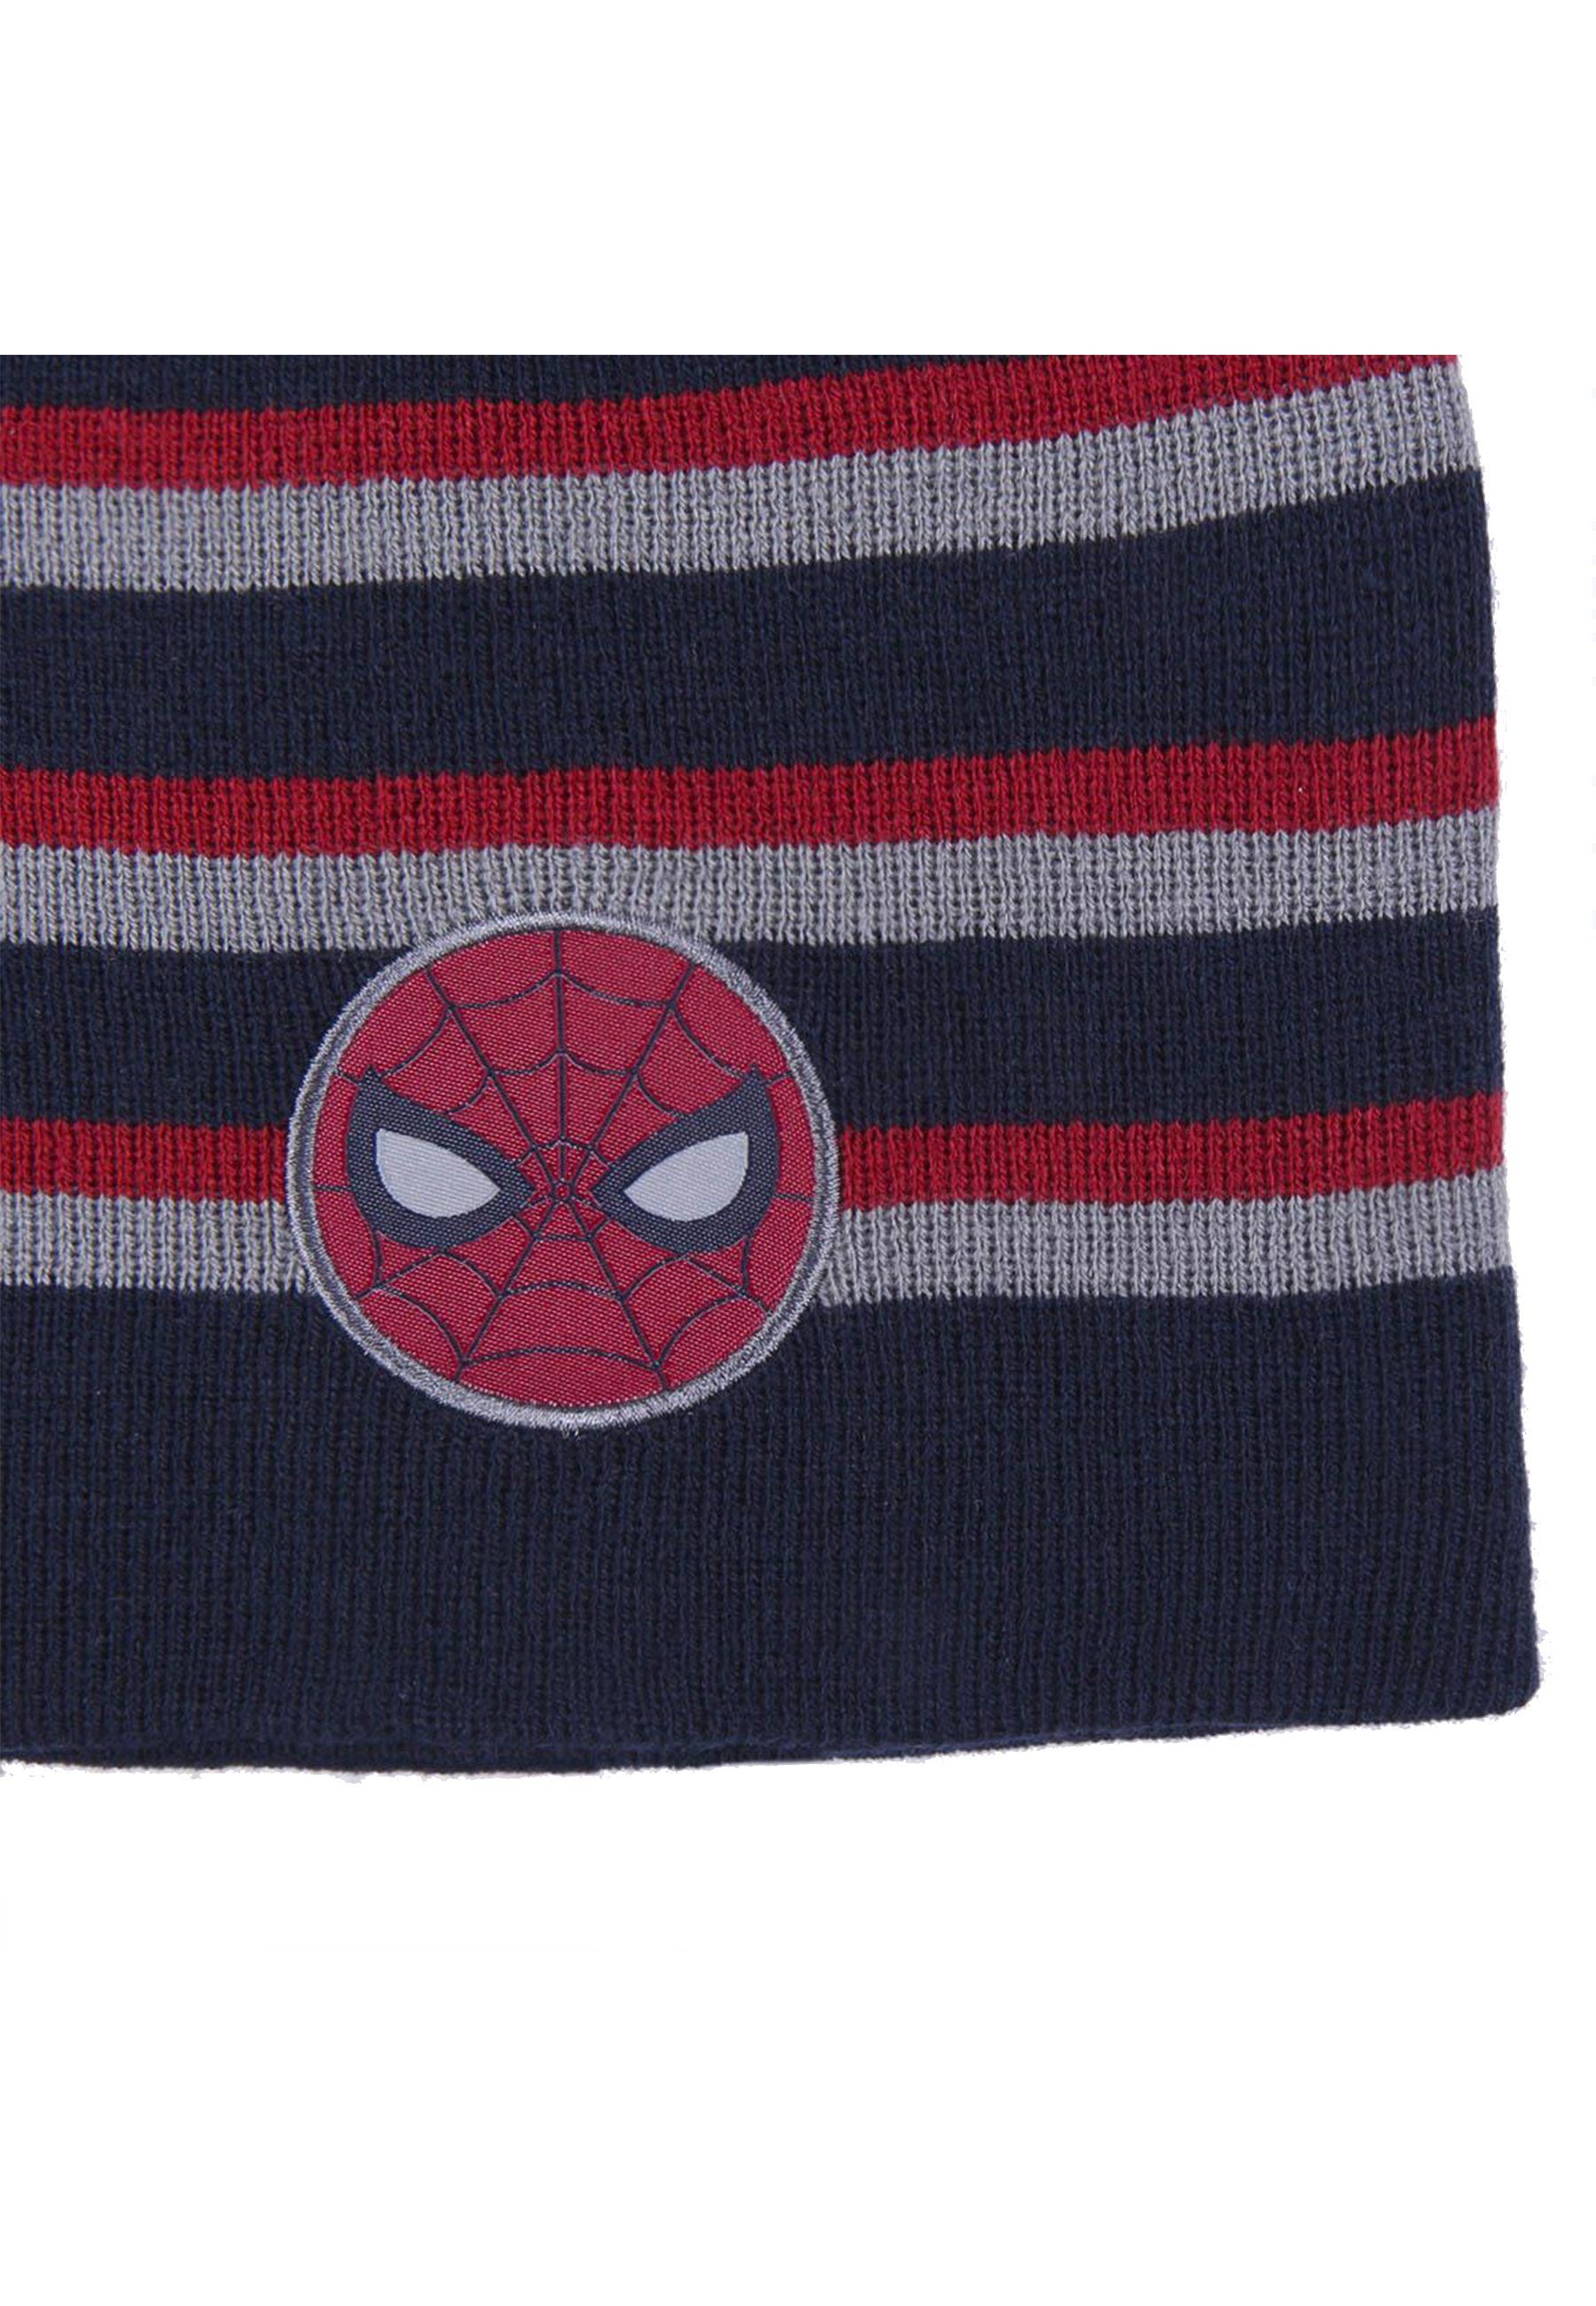 Strickmützte Kinder Jungen Winter-Beanie-Mütze Beanie Spiderman